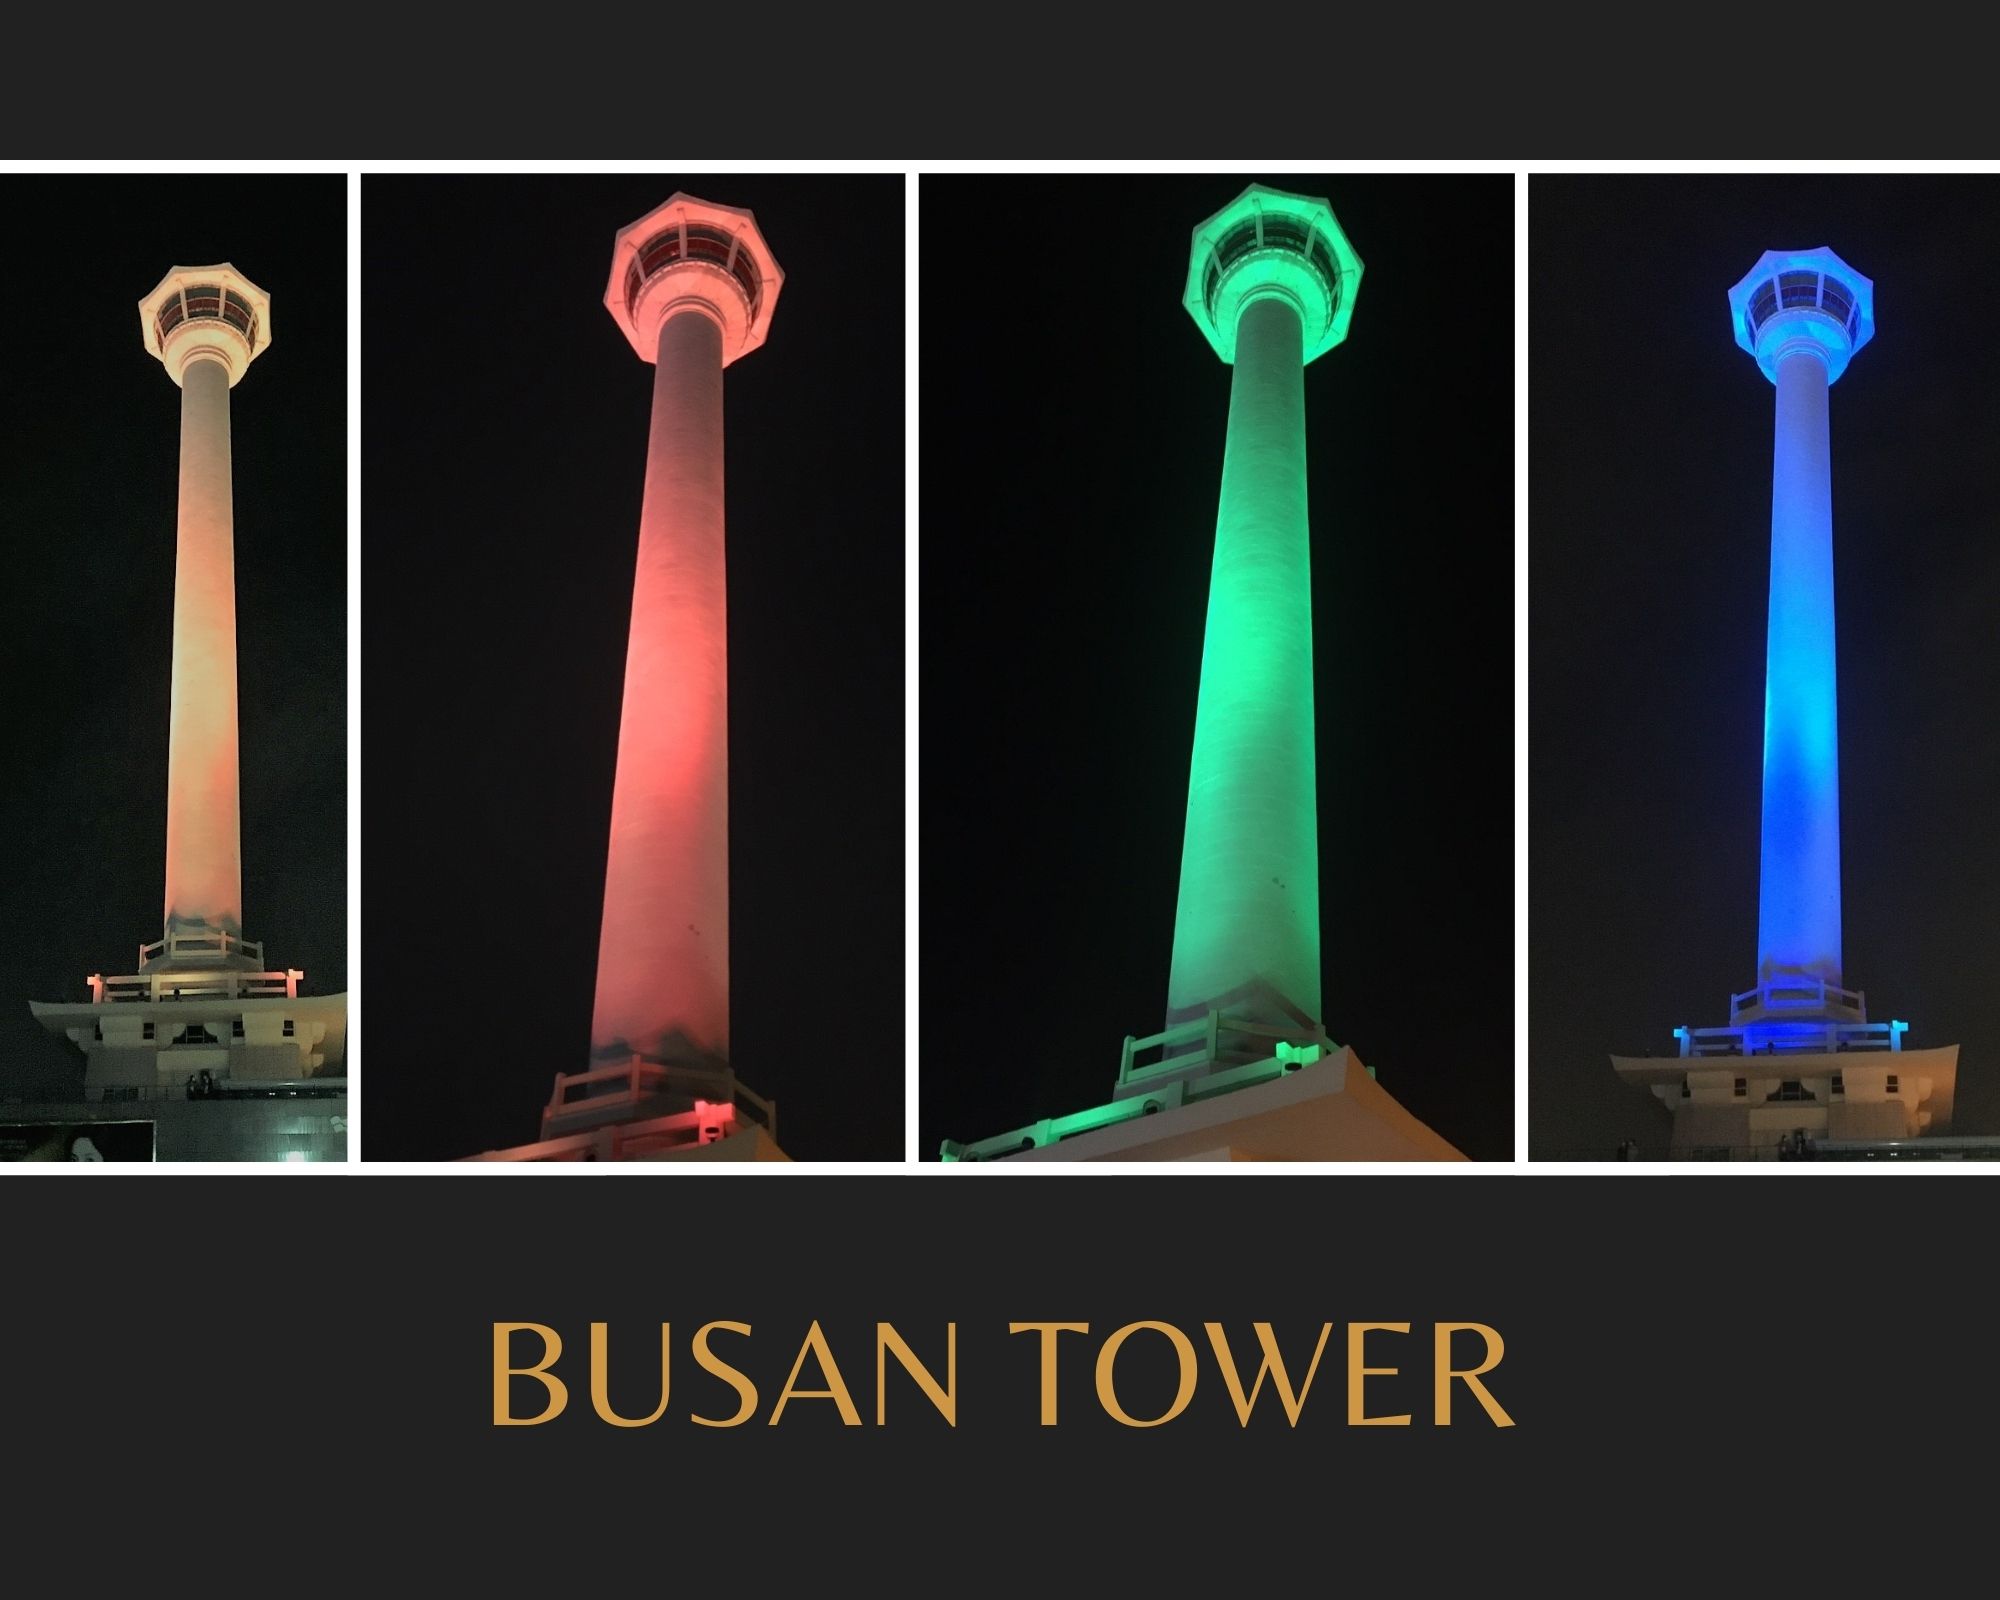 締盟當日於釜山塔點亮彩帶高之四個顏色